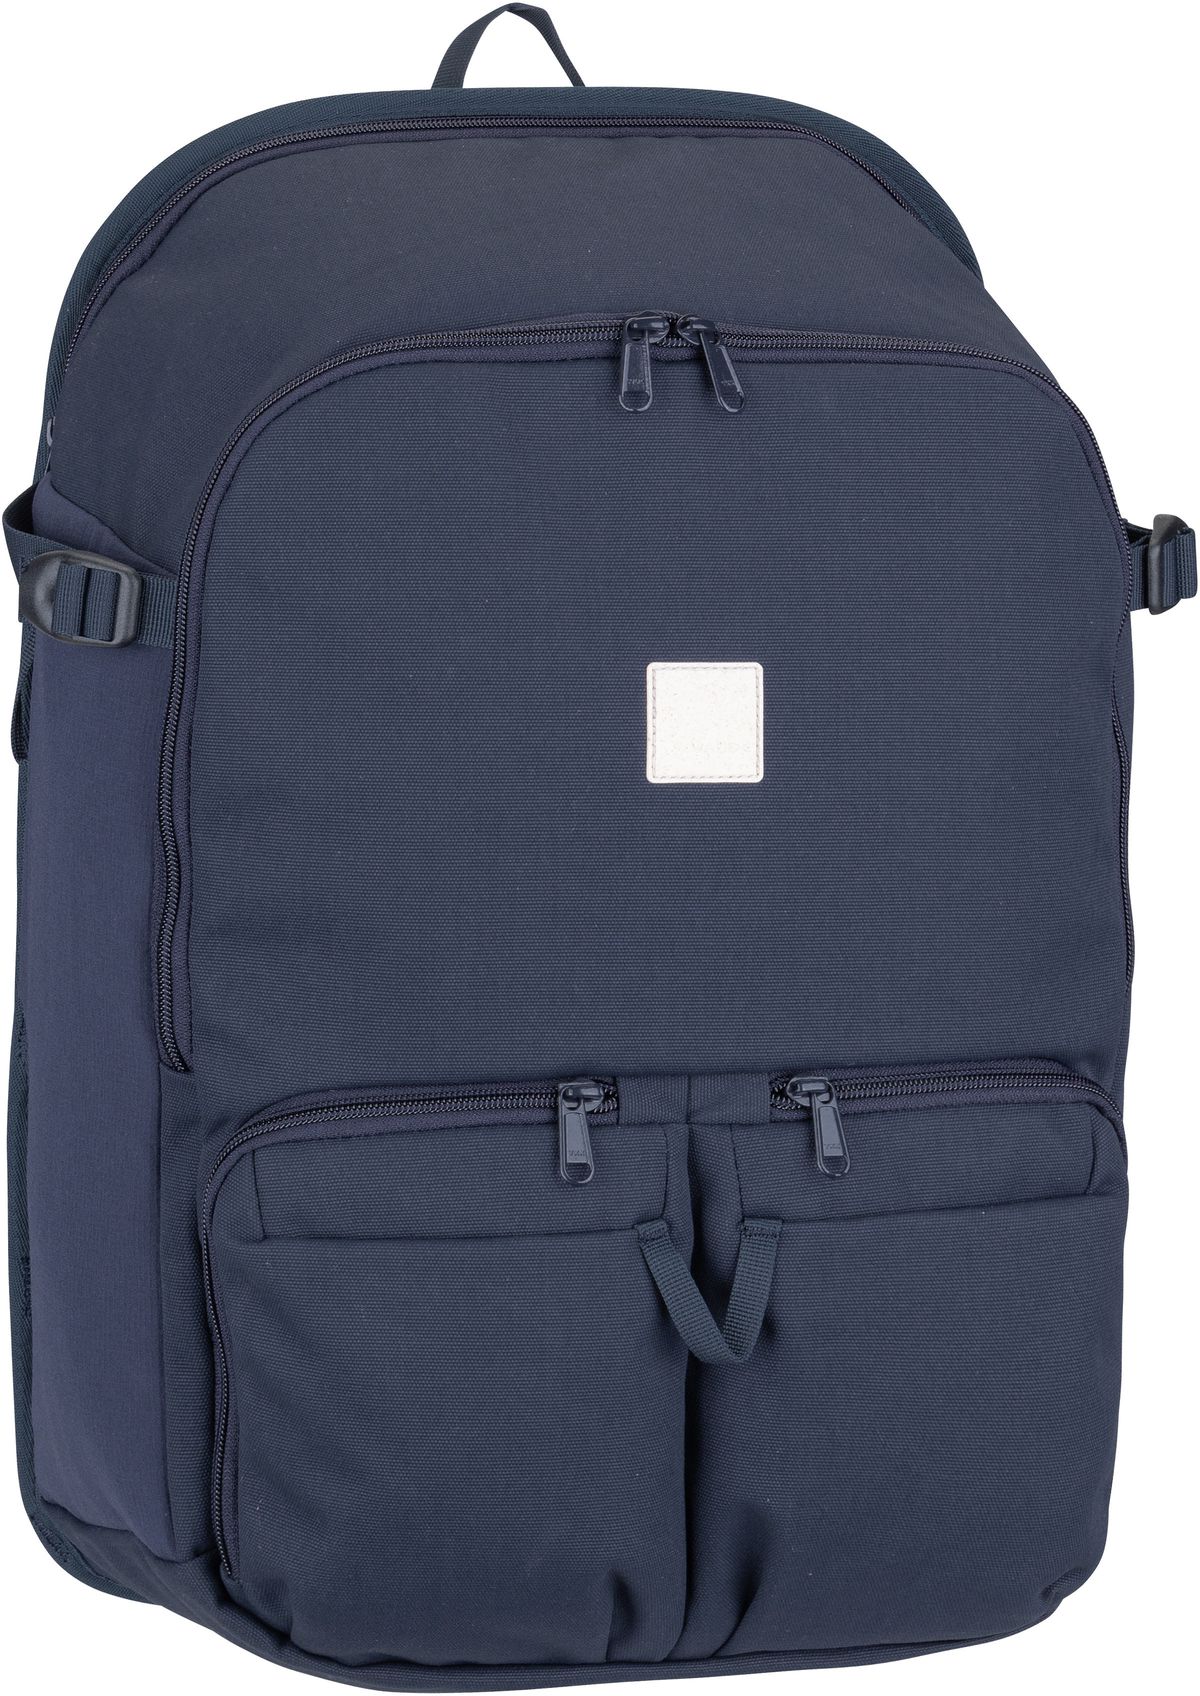 Vaude Coreway Backpack 23  in Eclipse (23 Liter), Rucksack / Backpack